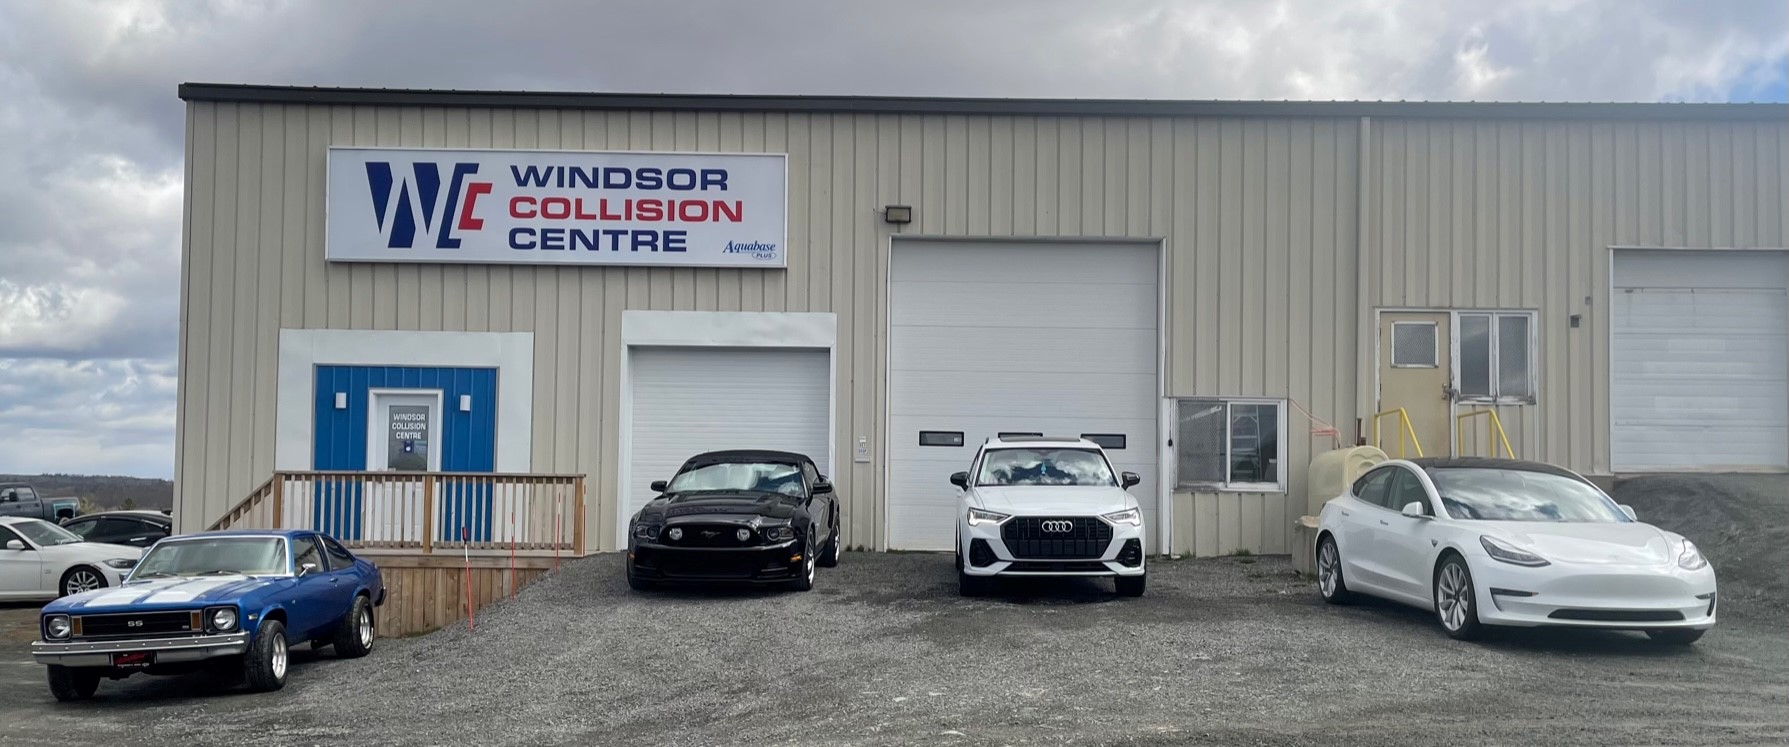 Windsor Collision Centre 5 Sanford Dr, Windsor Nova Scotia B0N 2T0